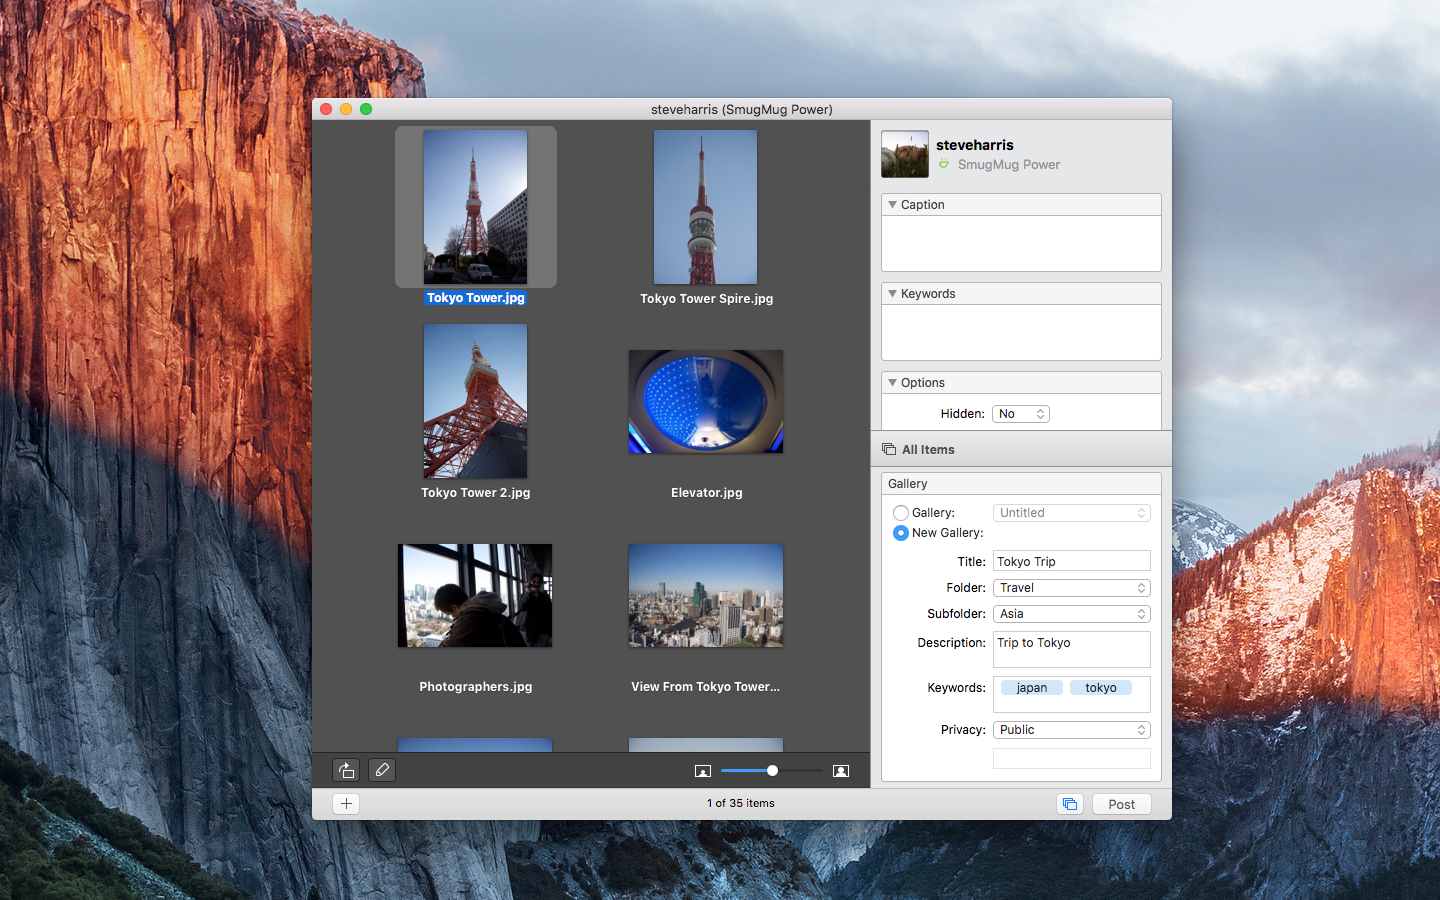 download skype for mac 10.6 8